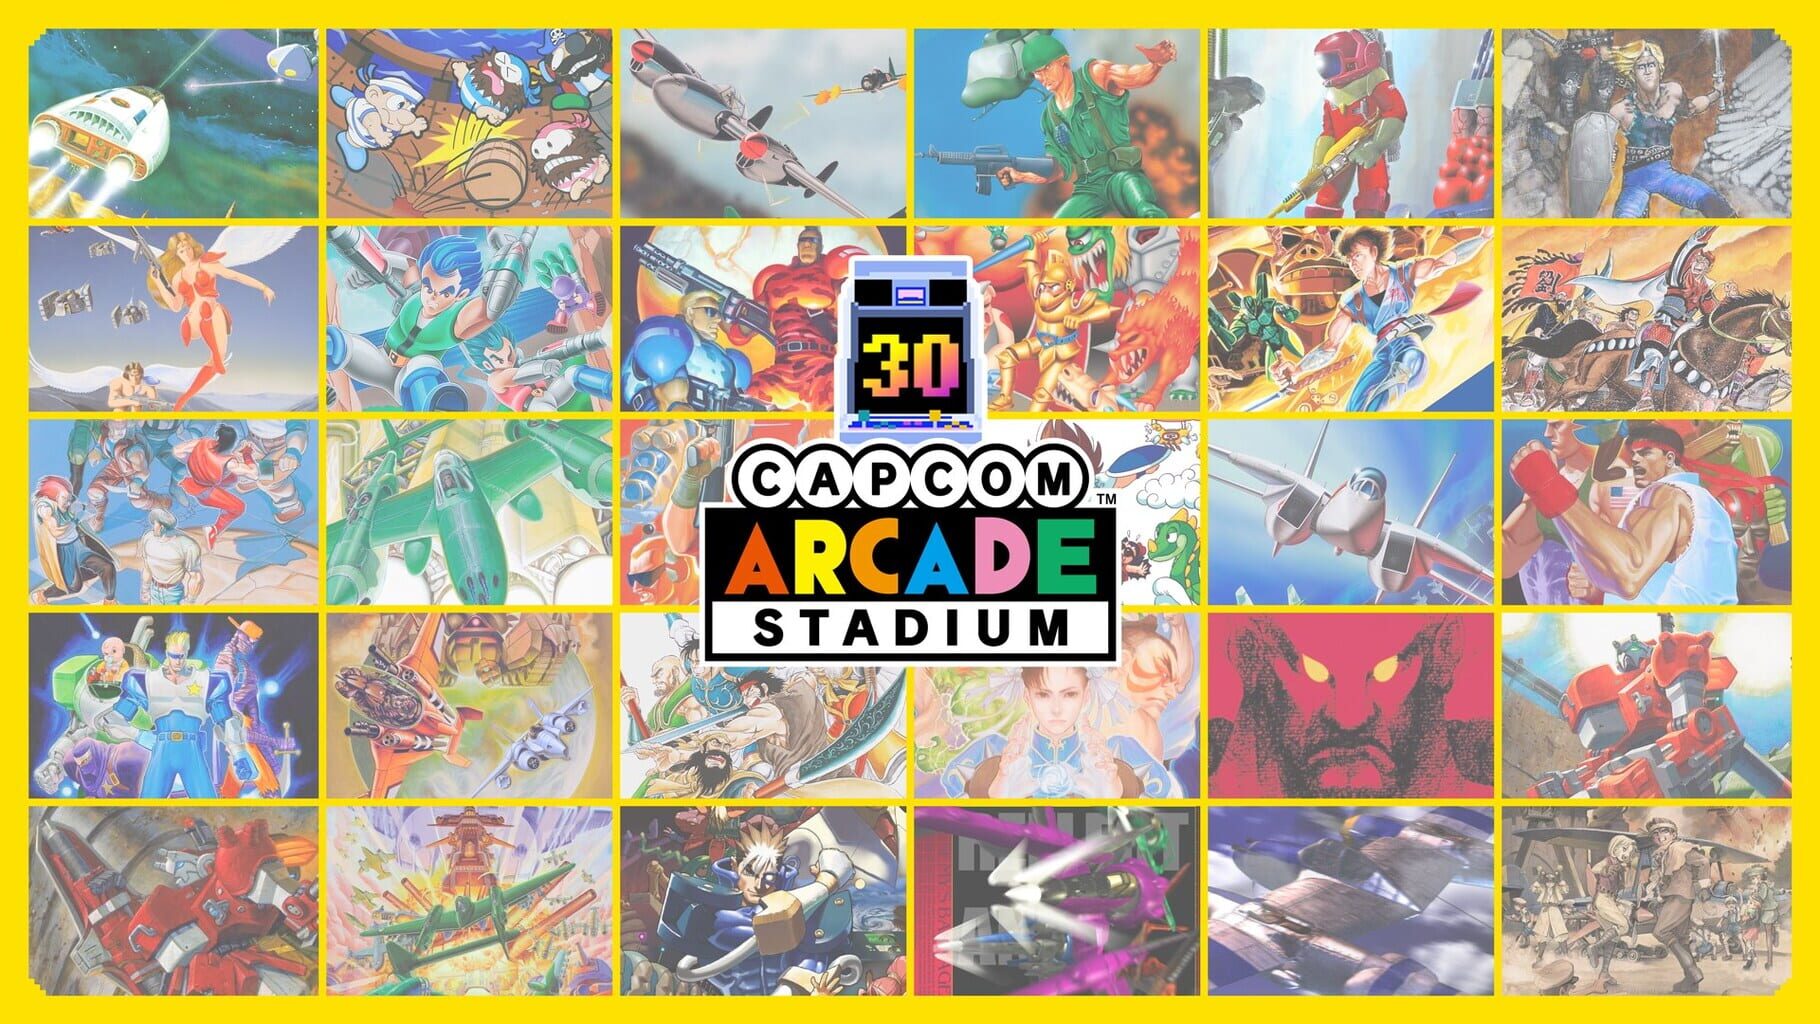 Capcom Arcade Stadium Packs 1, 2, and 3 artwork